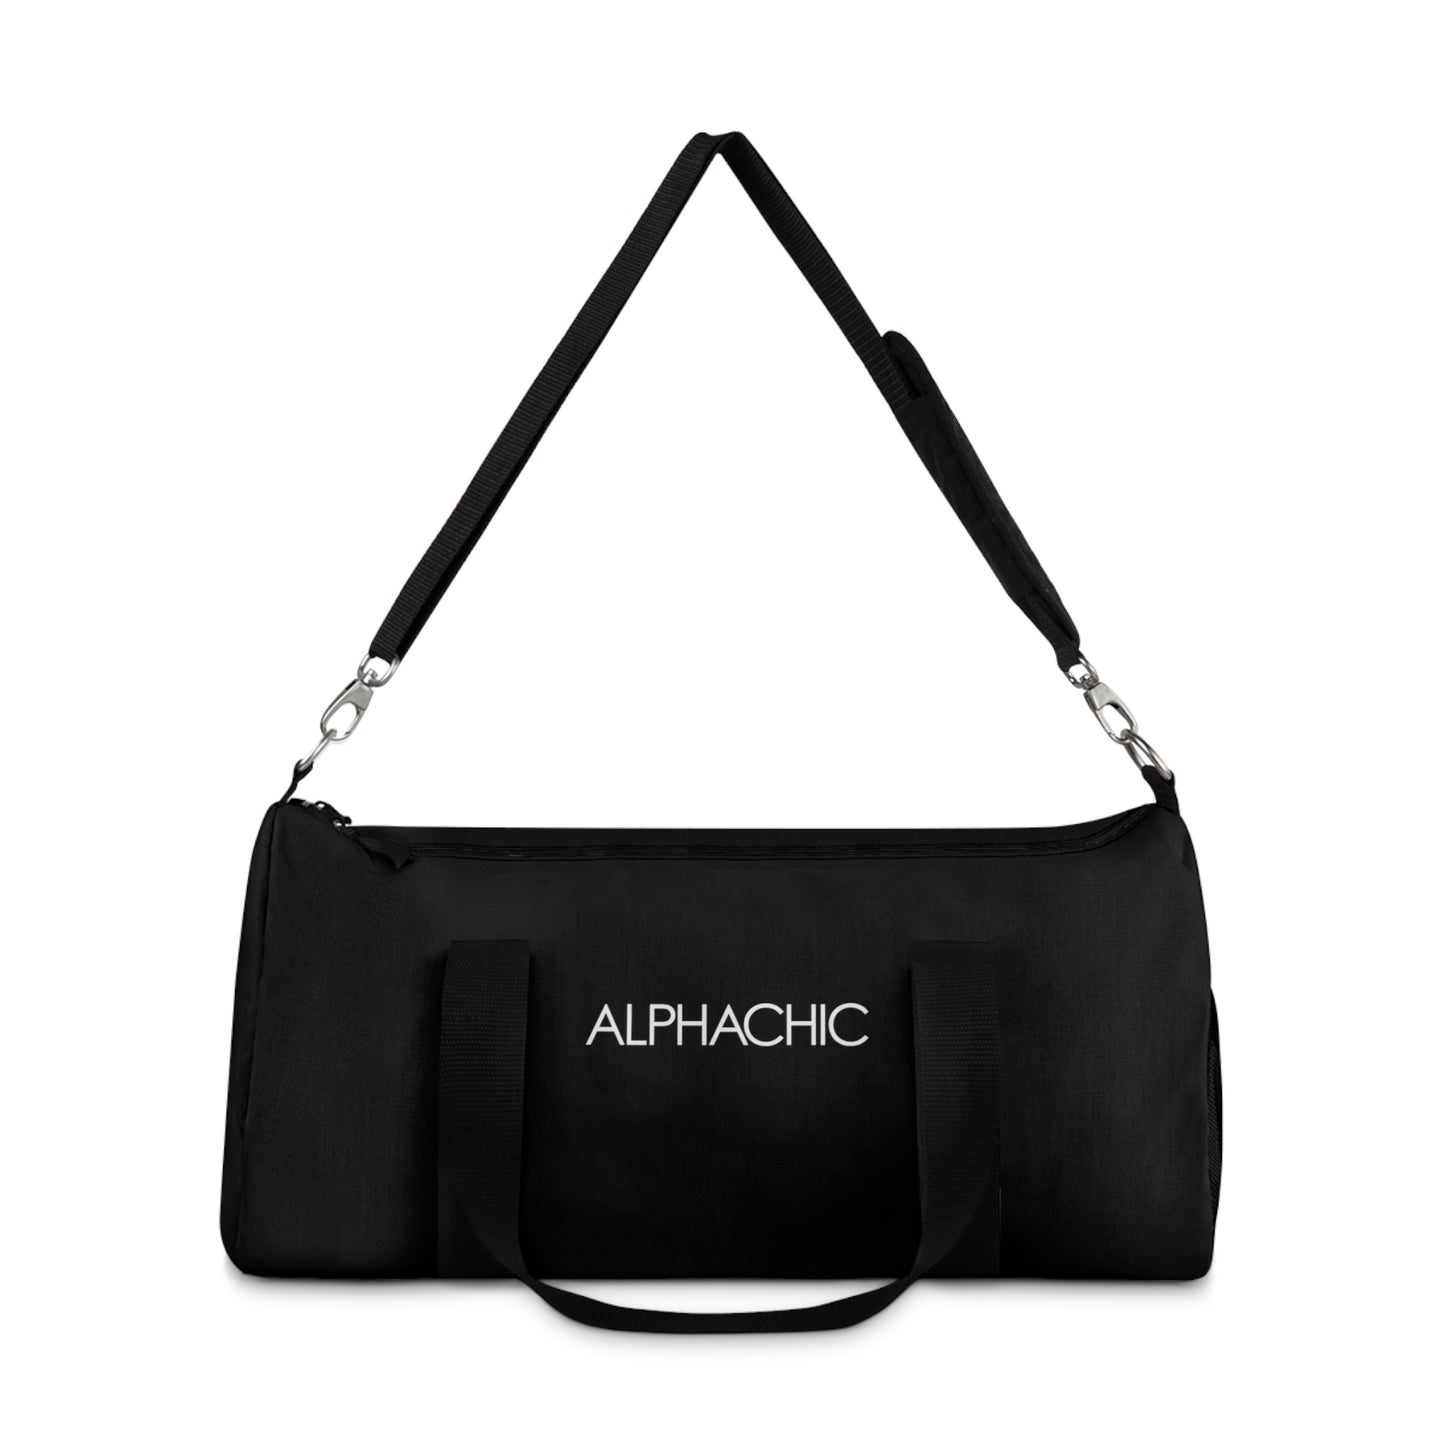 AlphaChic Gym Duffel Bag - Black